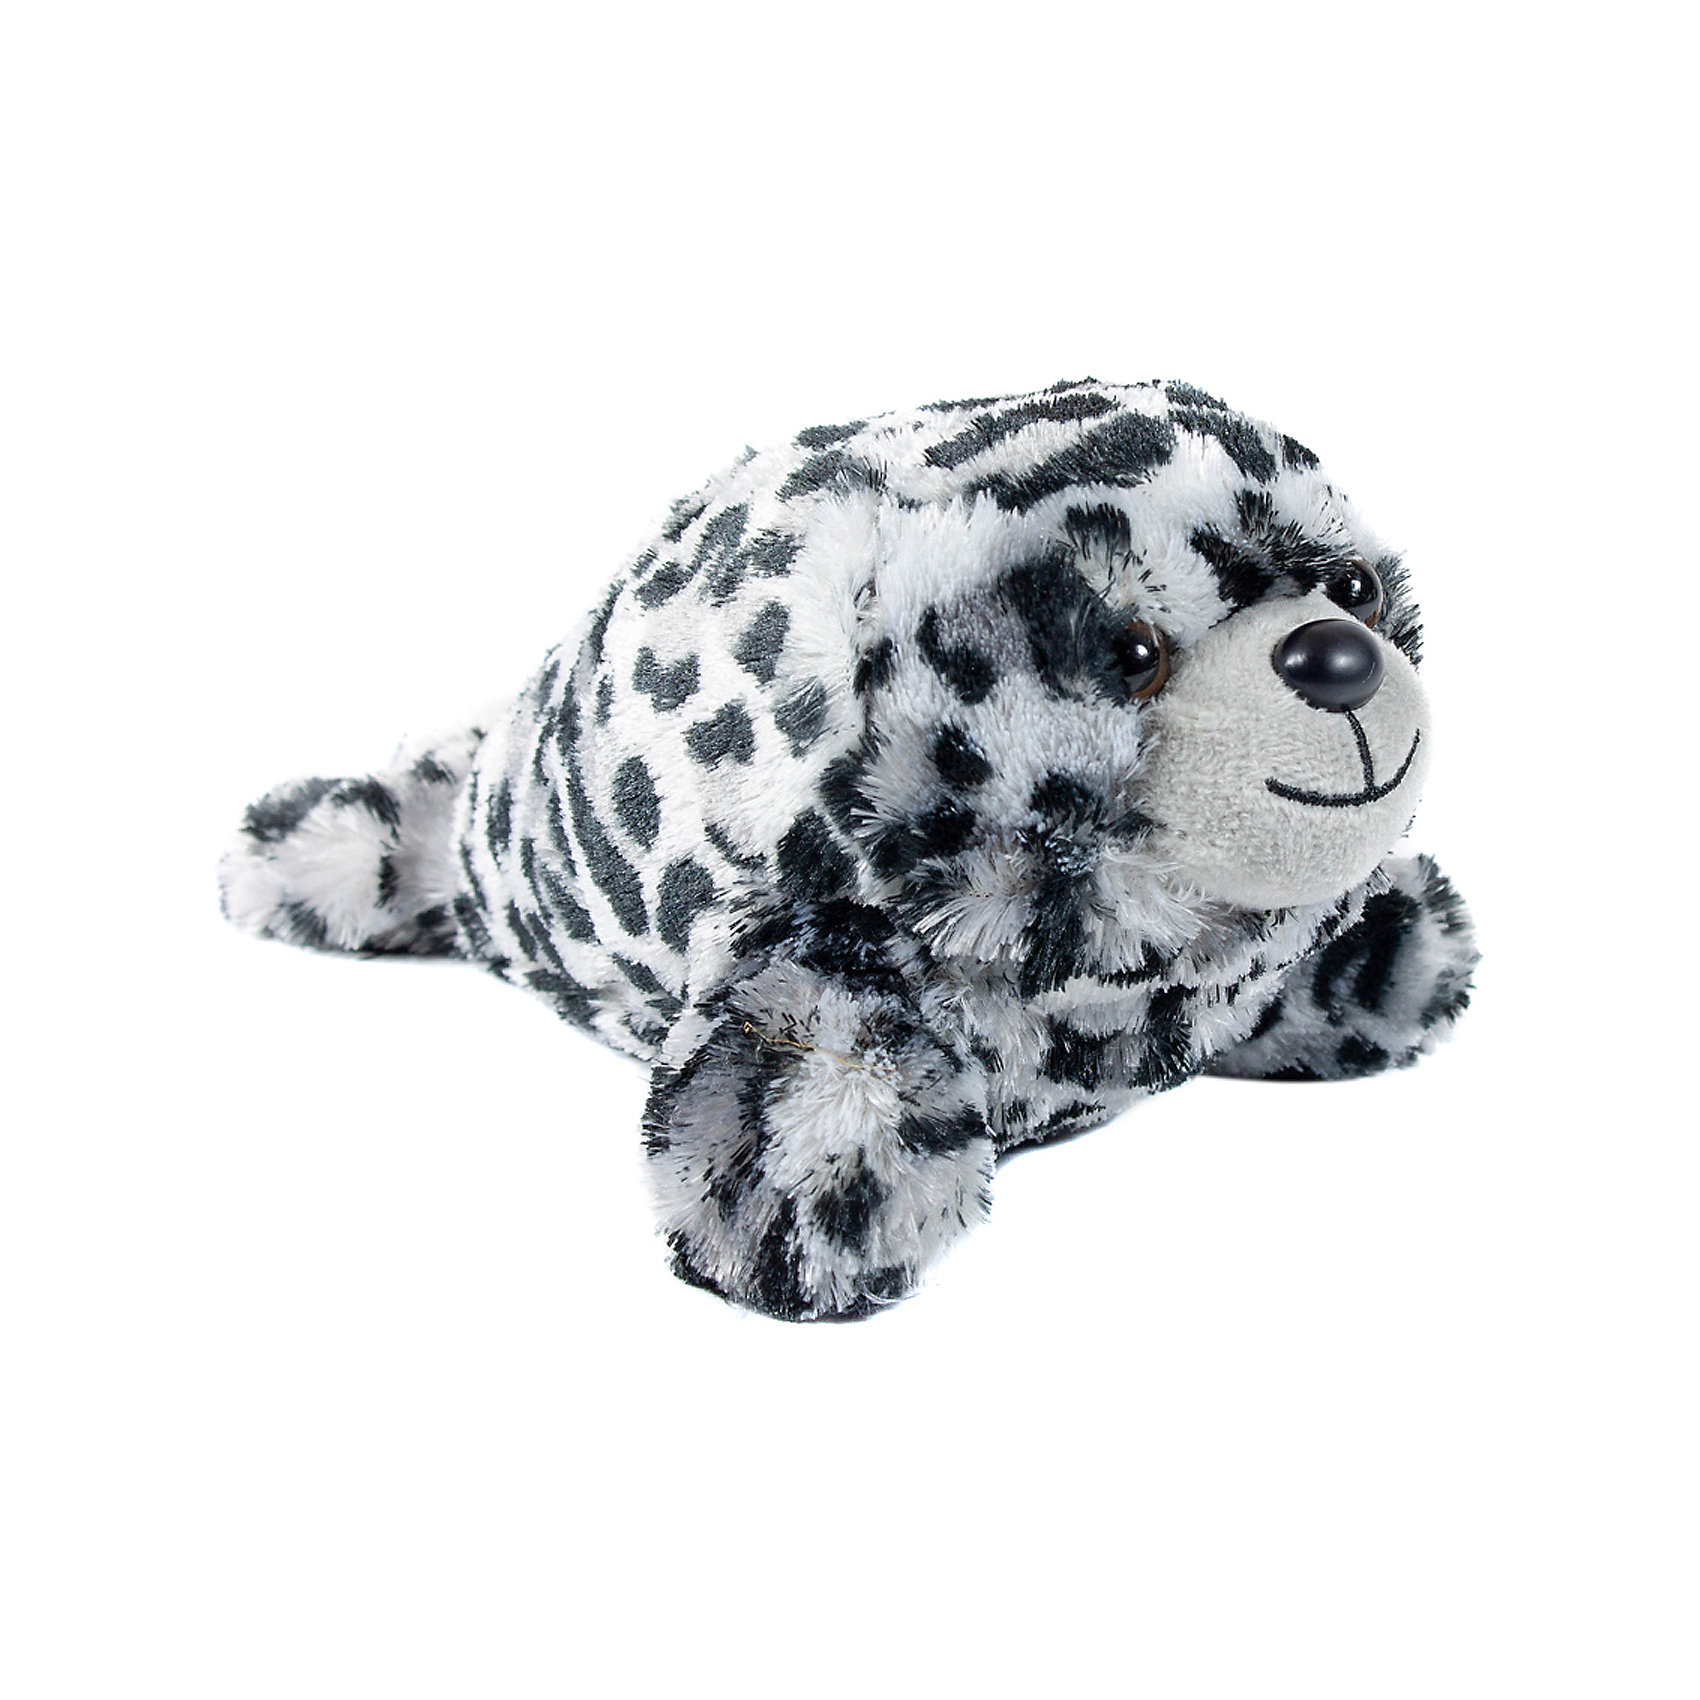 Мягкая игрушка Детеныш тюленя, 20 см Wild Republic 15012920